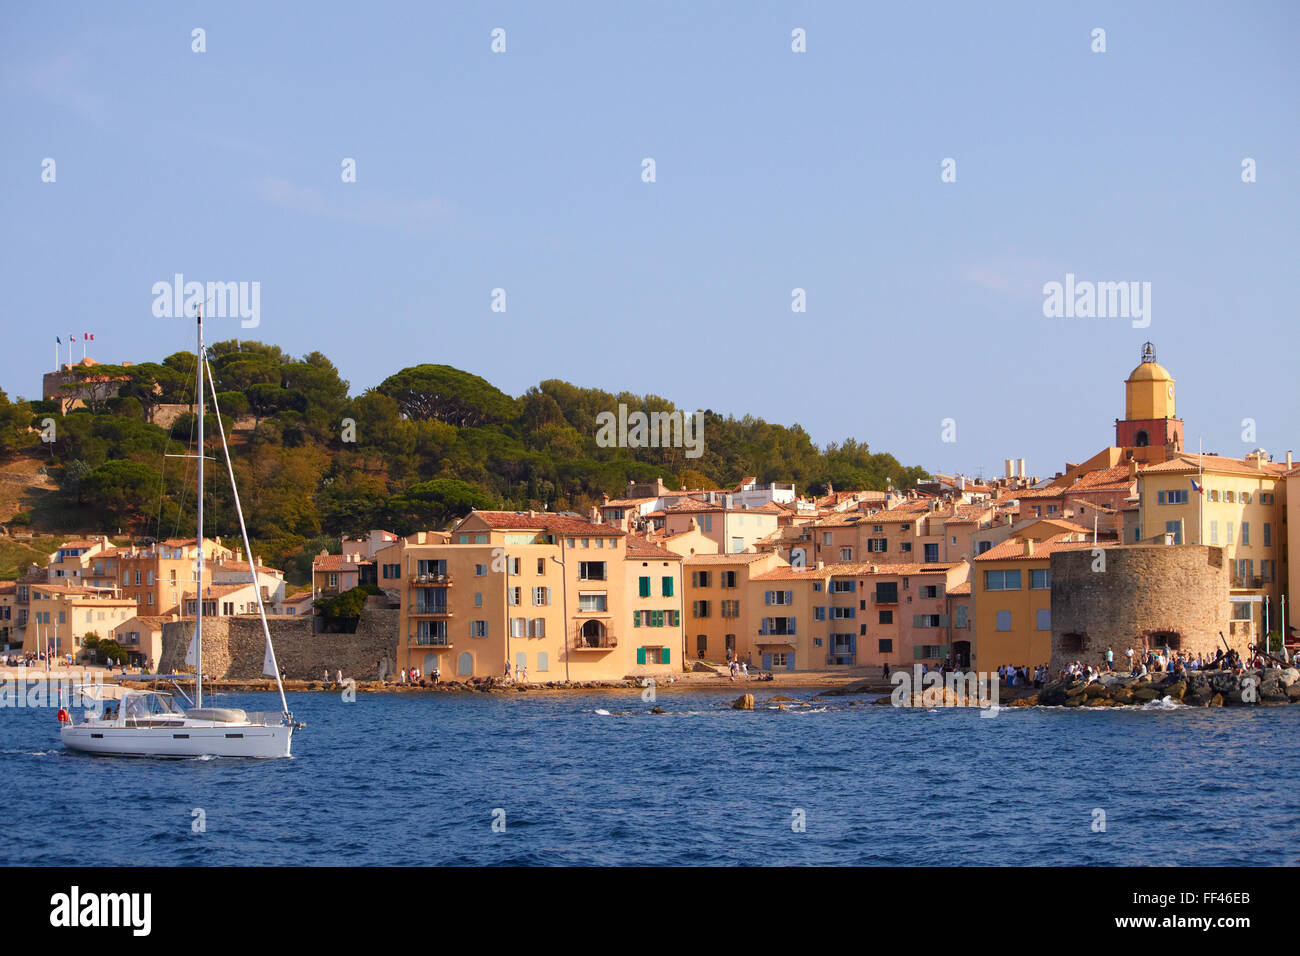 Les Voiles de St Tropez 2015 Port of Saint-Tropez, France, EU Stock Photo